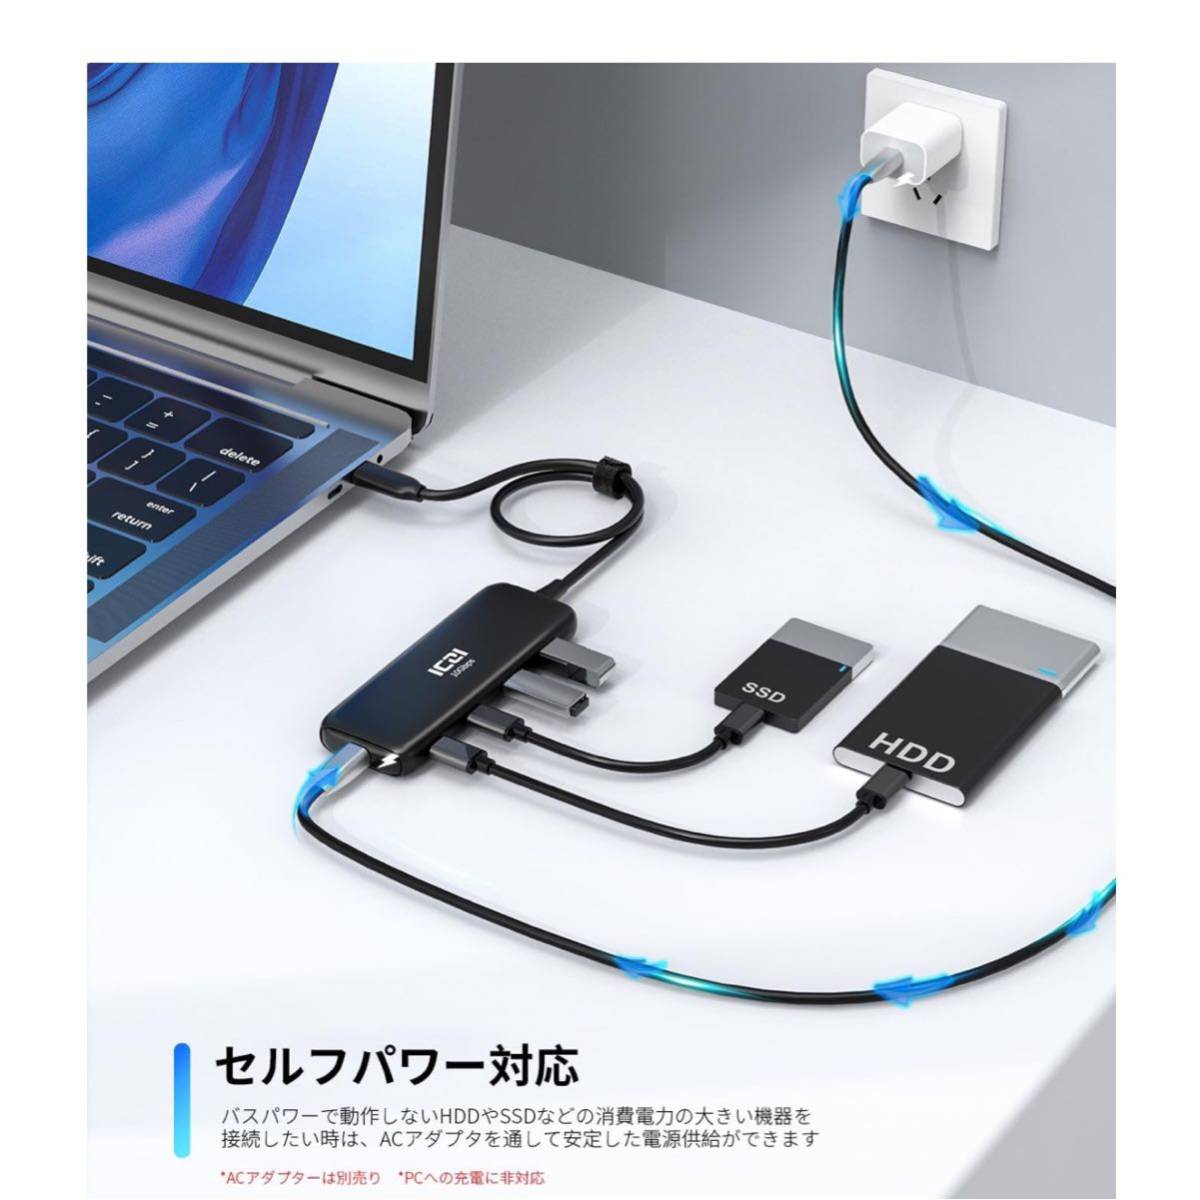 【開封のみ】ICZI★ 10Gbps USB C ハブ3.2 Gen 2 4ポート拡張、ICZI USBC 3.2 to USBC 3.2 変換アダプター 40CMケーブル セルフパワーの画像3